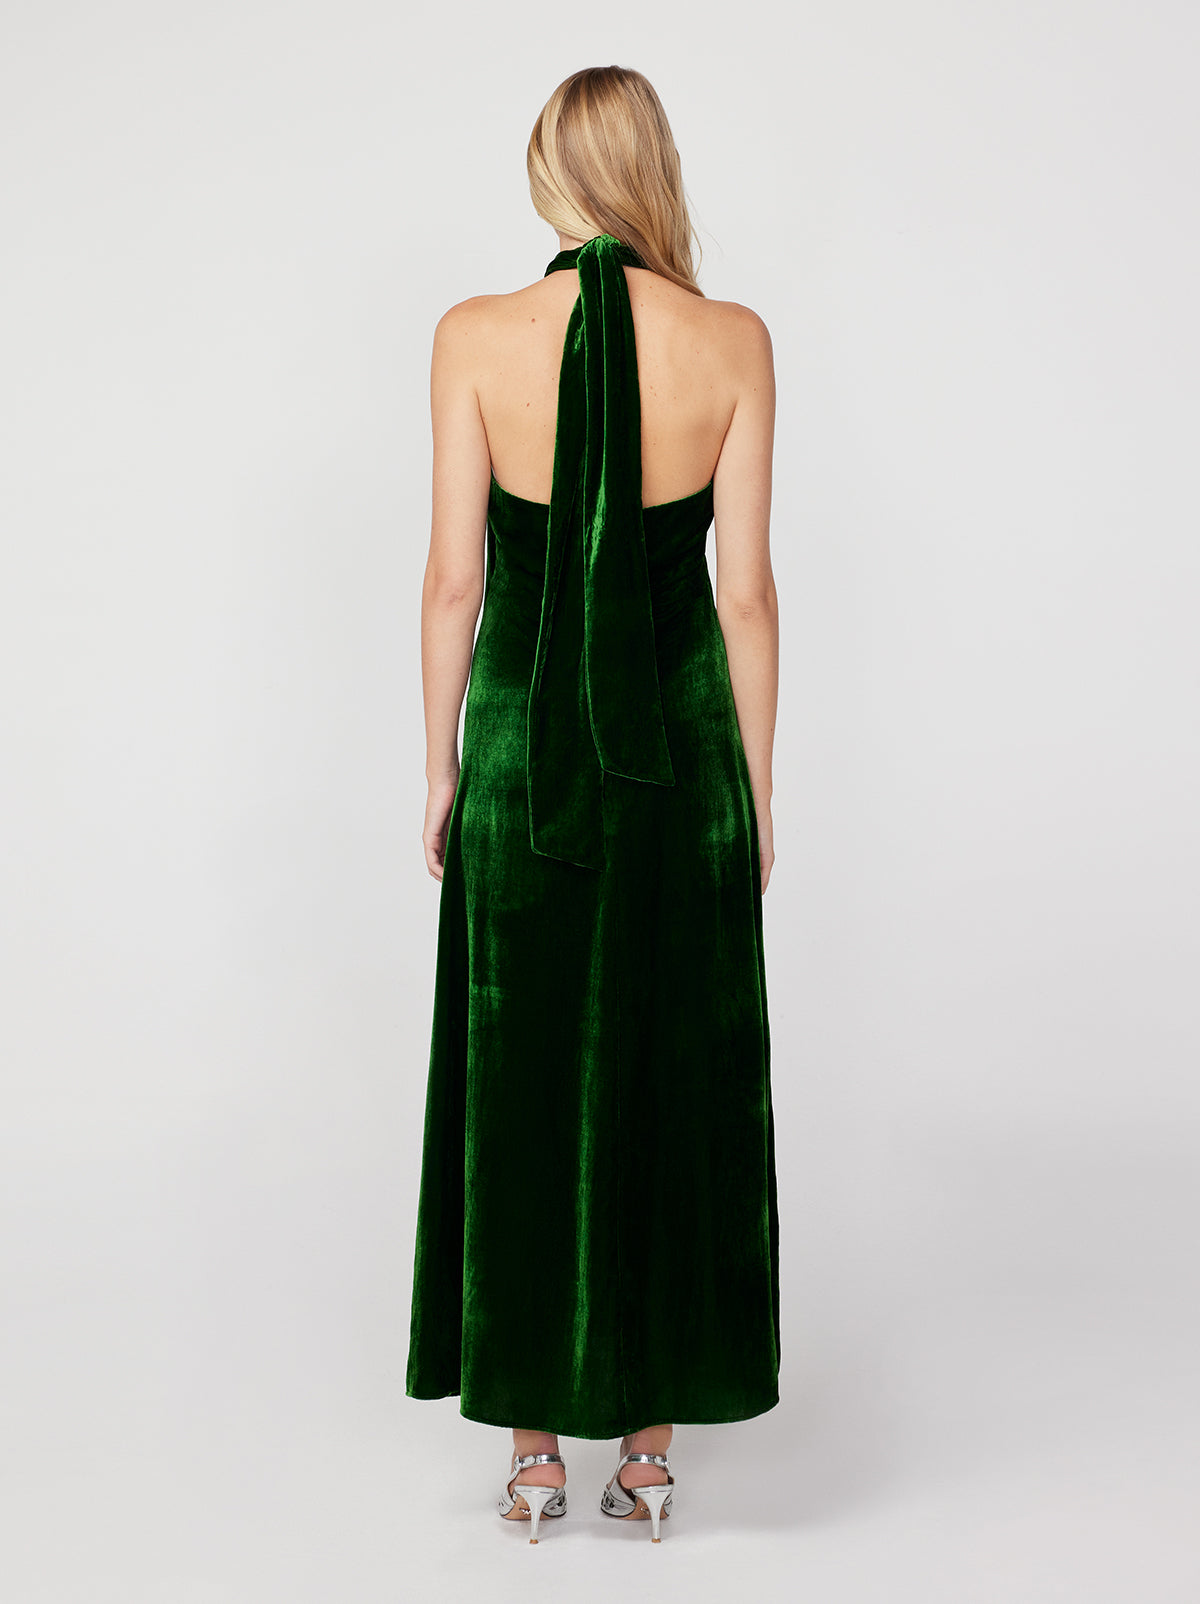 Neve Green Velvet Halter Dress